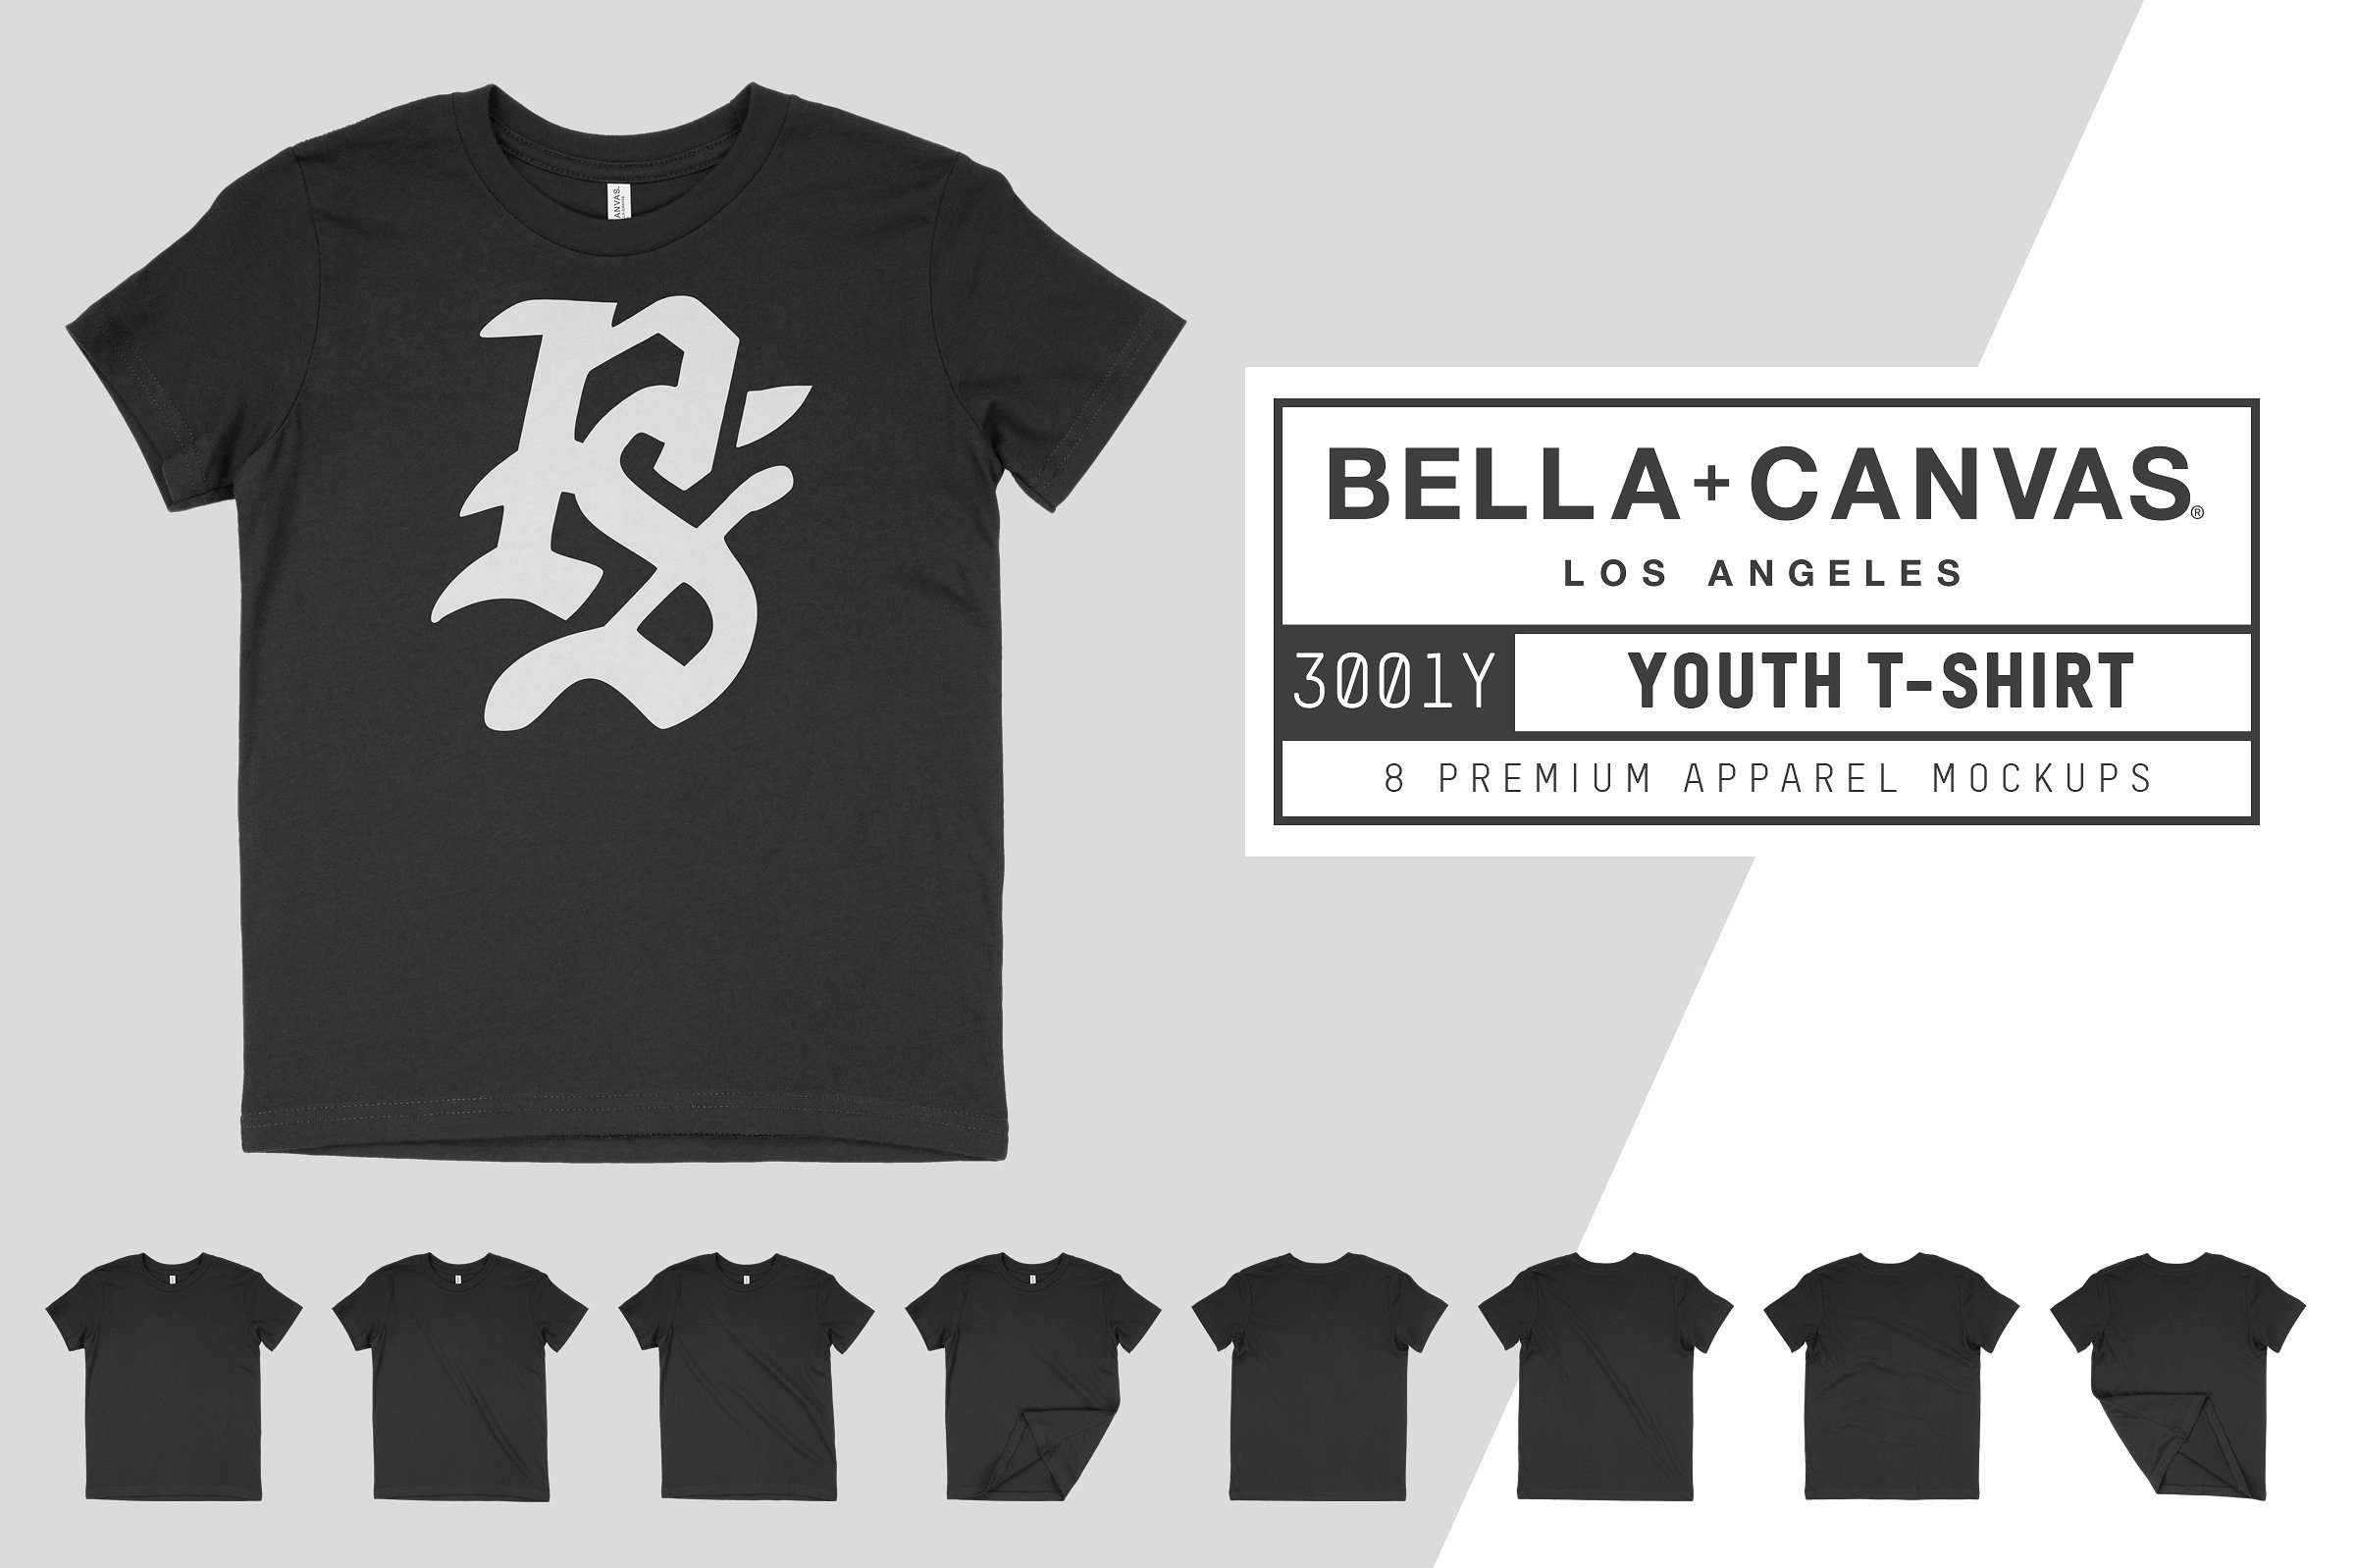 帆布男士T恤服装样机 Bella Canvas 3001Y Youth T-Shirt插图